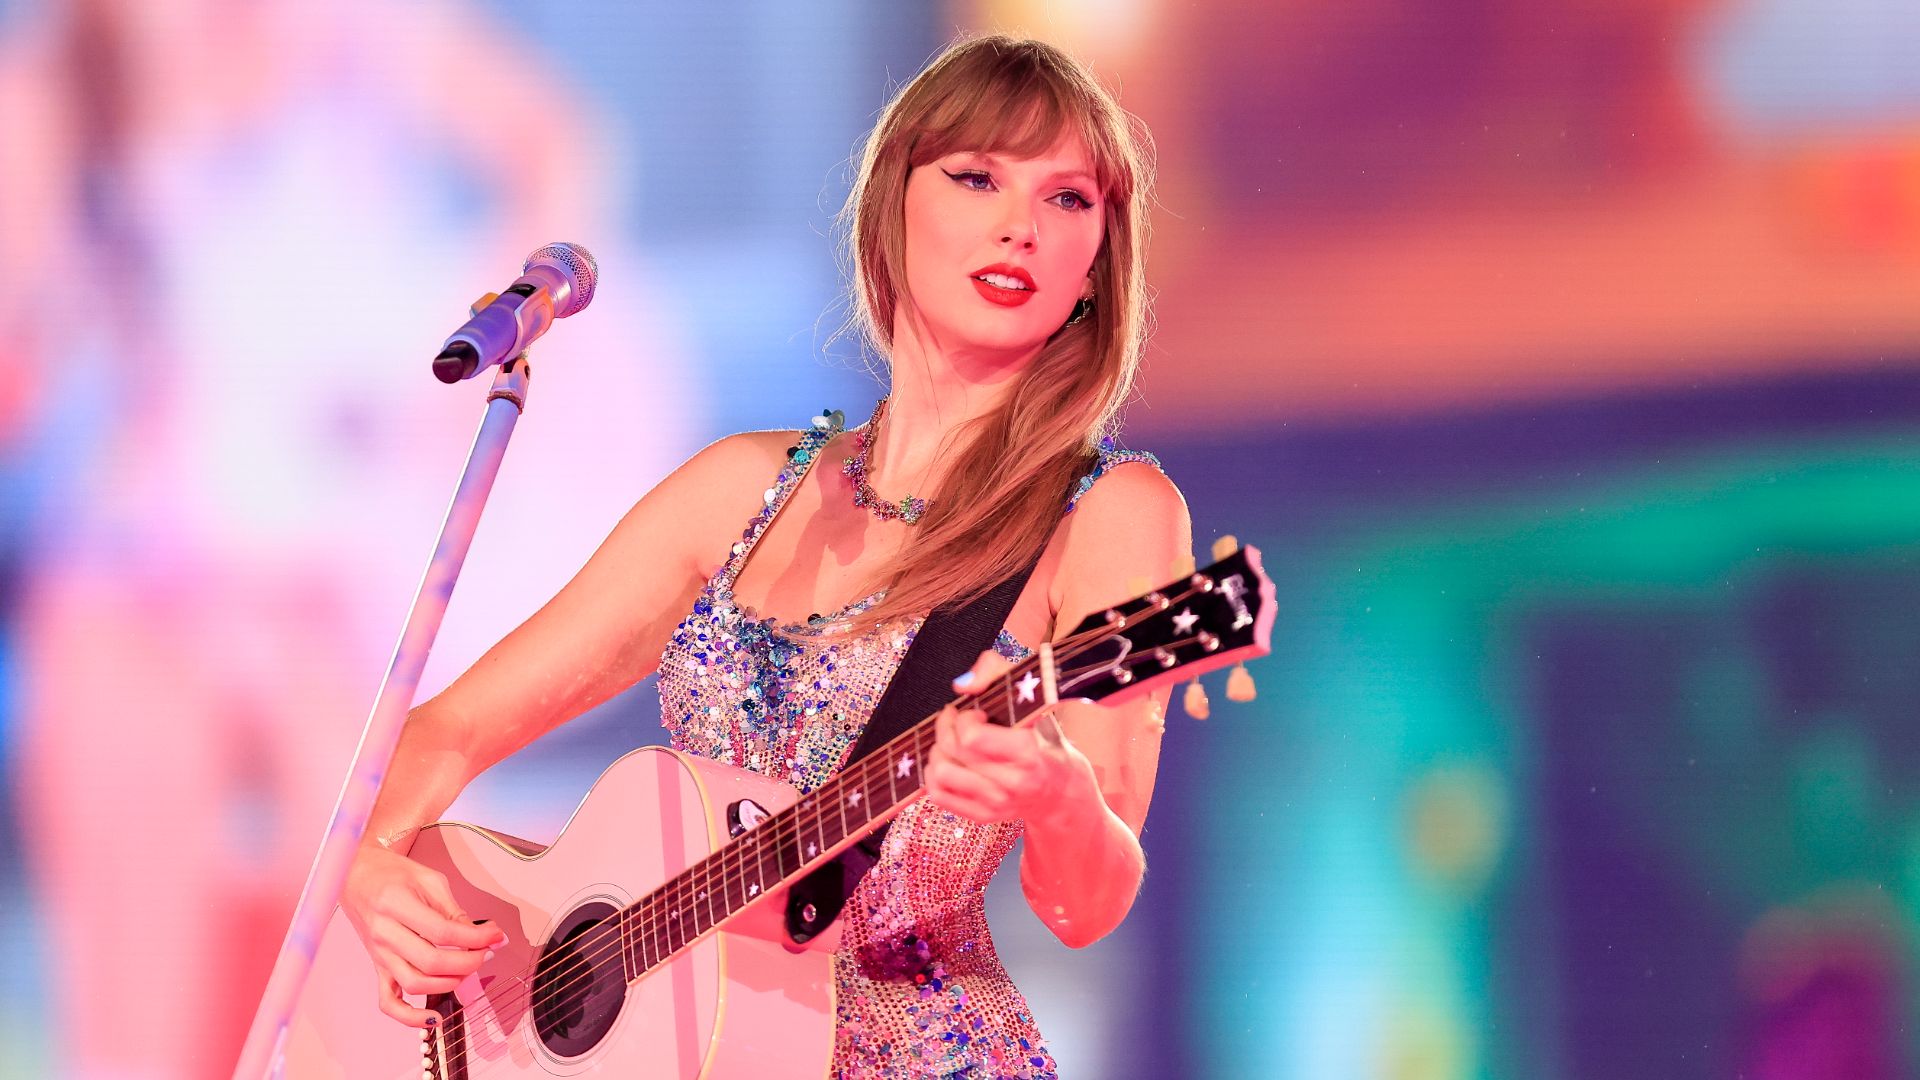 Taylor Swift personnalité de l’année selon TIME, mais pas selon tout le monde!